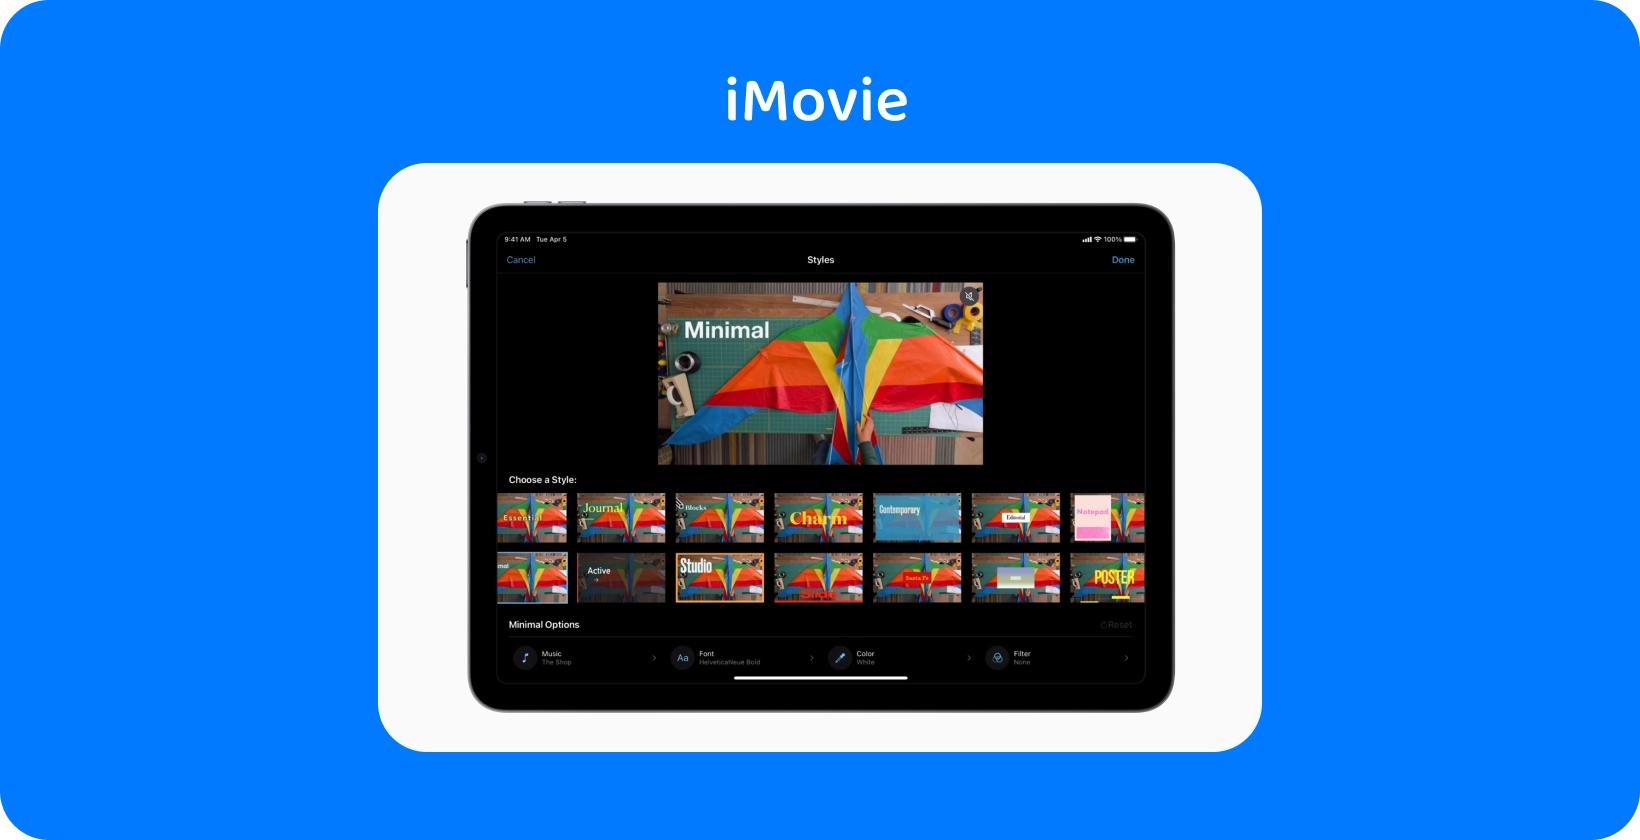 平板电脑上的 iMovie 显示各种视频编辑风格，彩色风筝项目设置为“最小”主题。